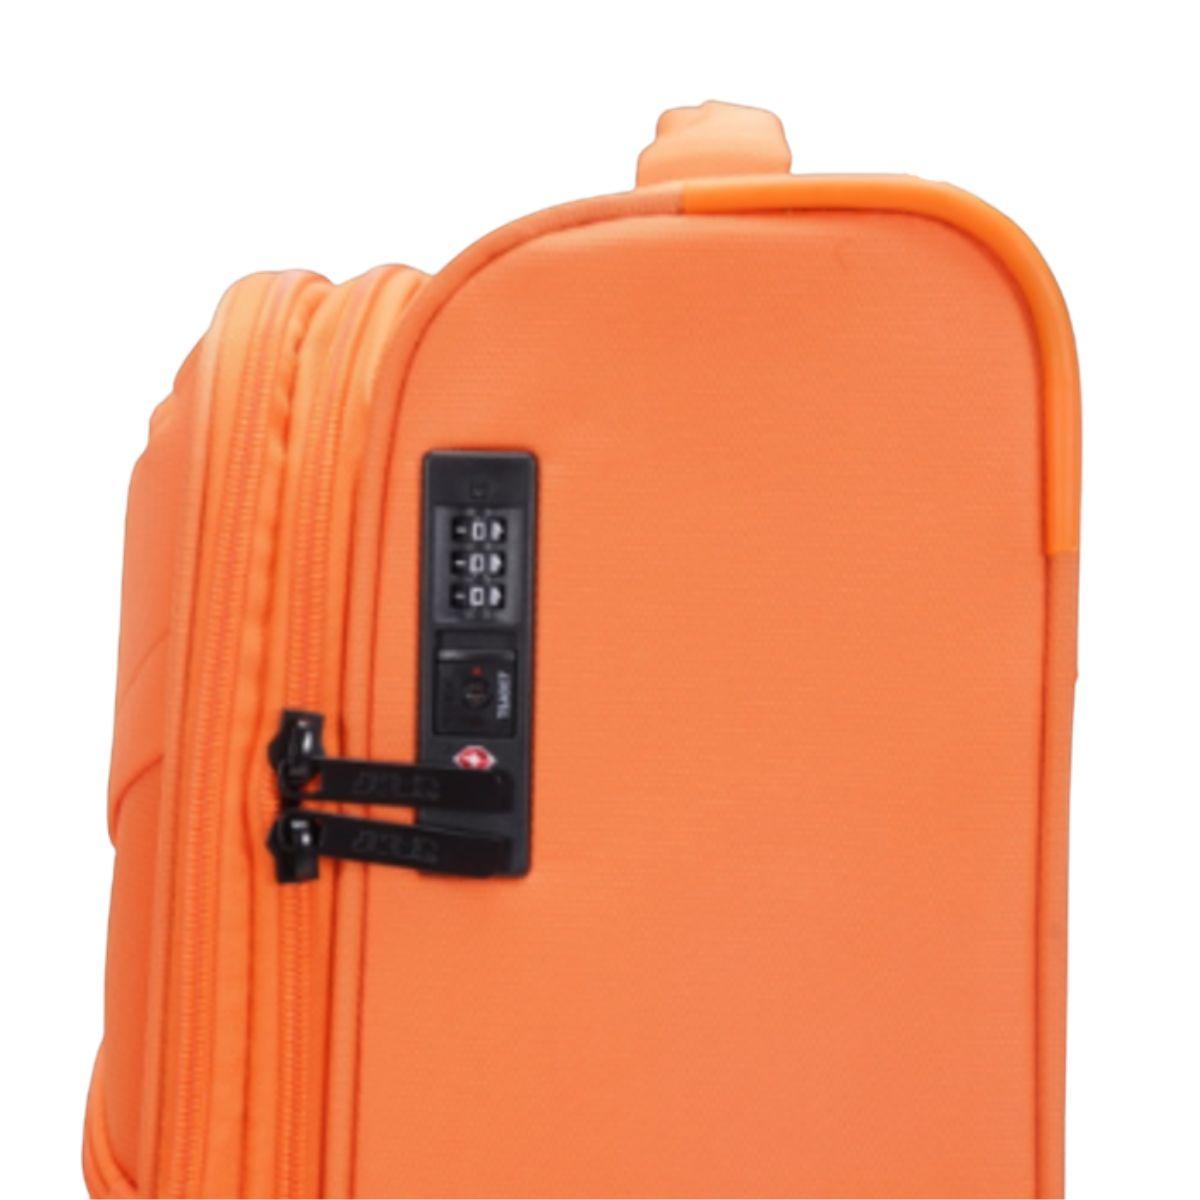 Zijkant met TSA slot #kleur_orange